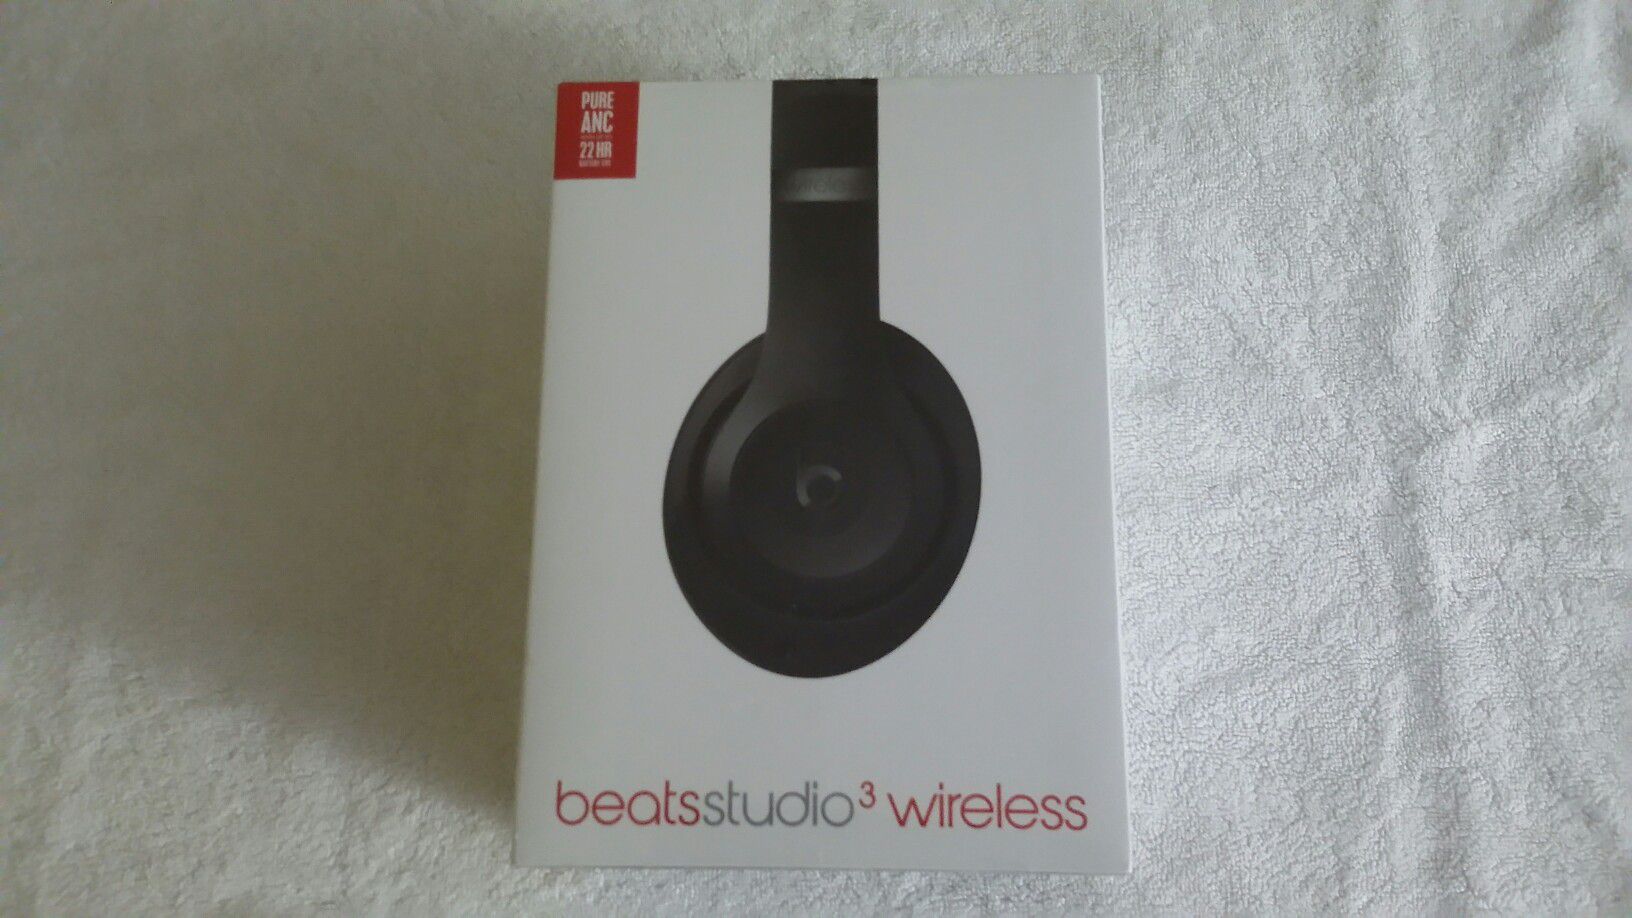 Beats studio 3 wireless black NIB